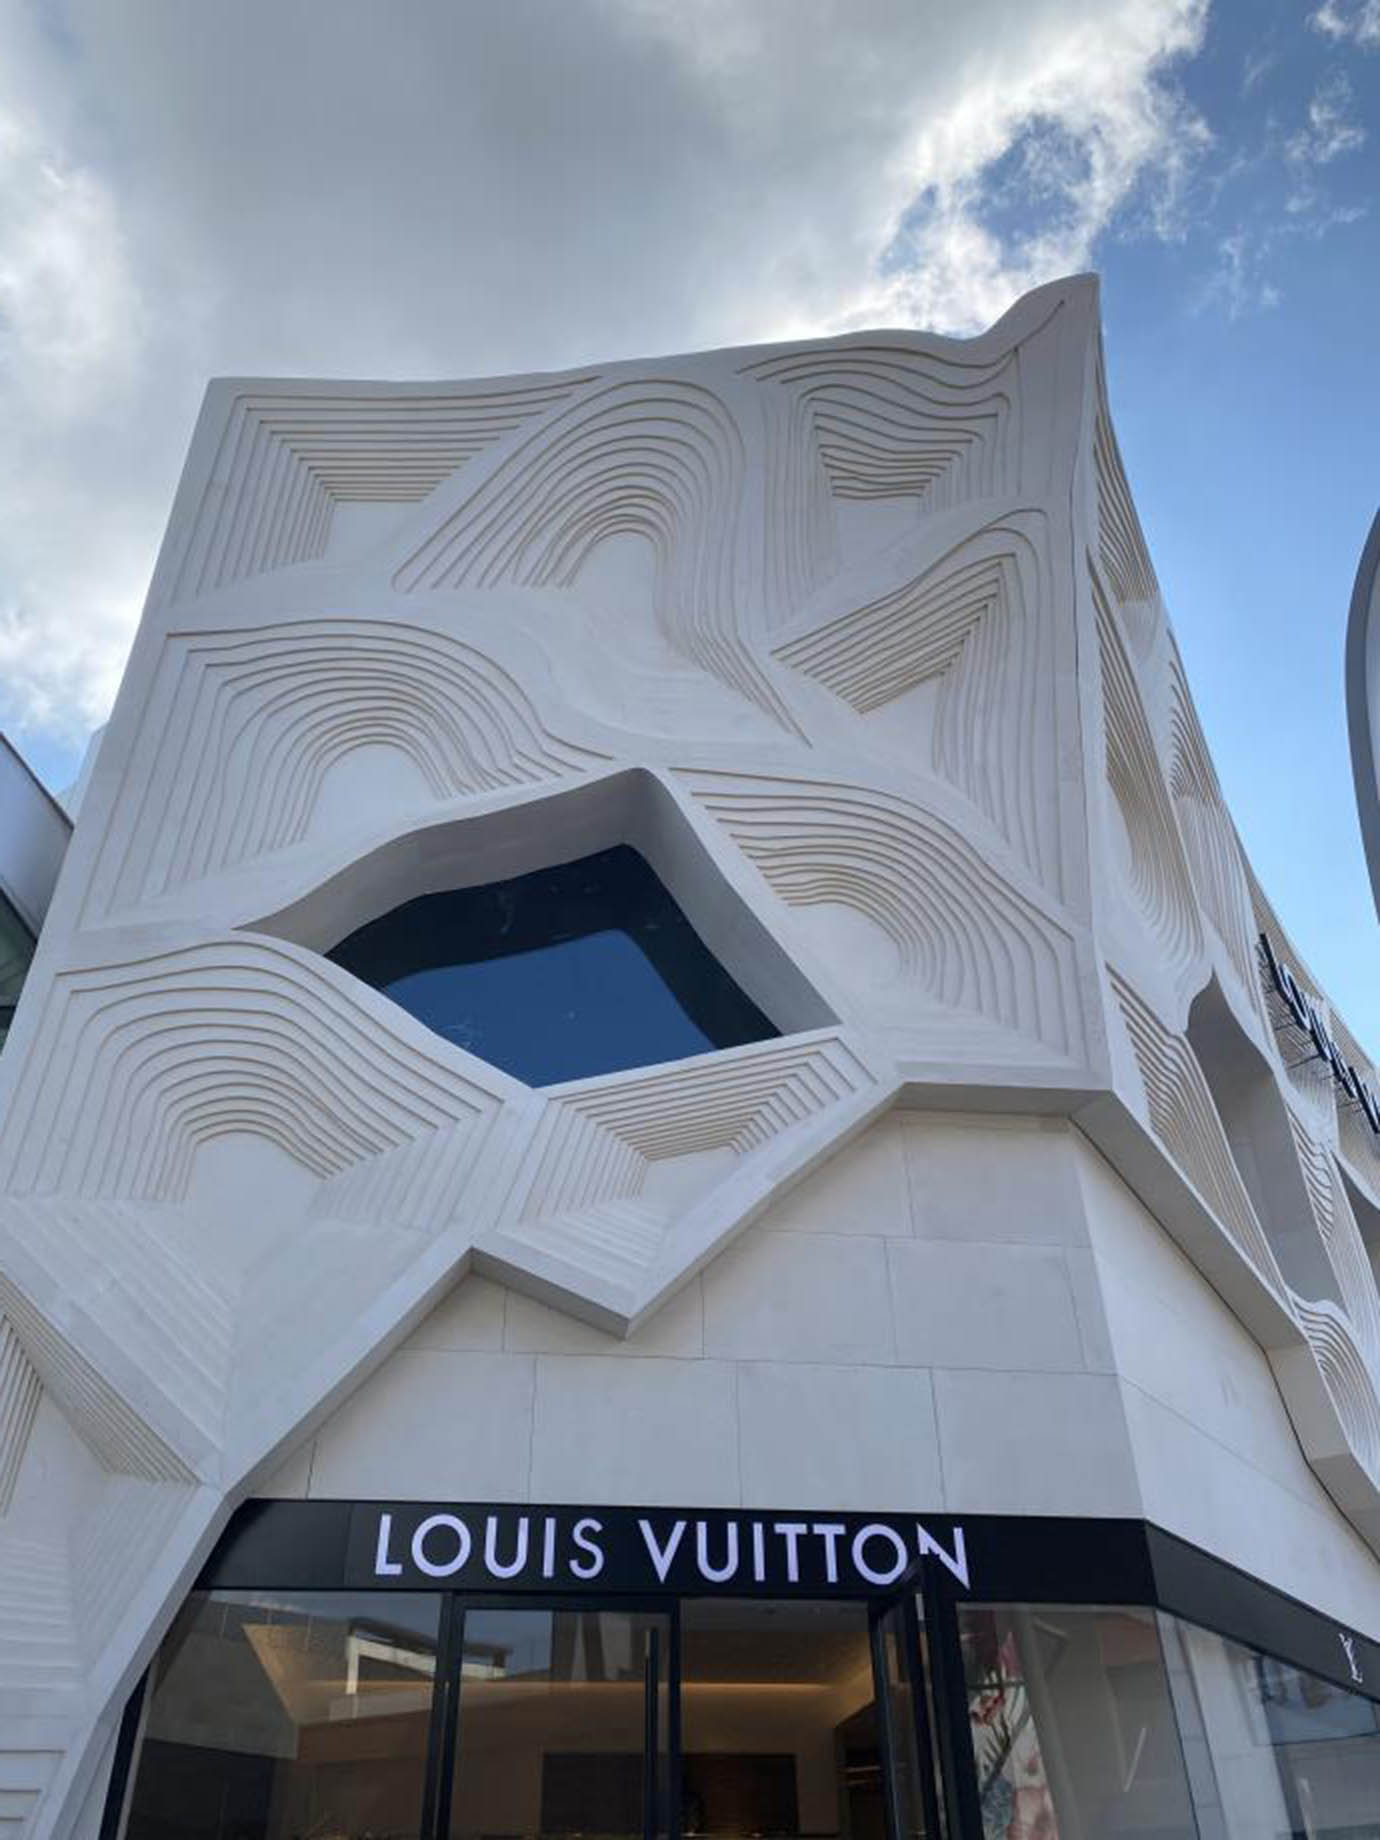 Louis Vuitton facade design 